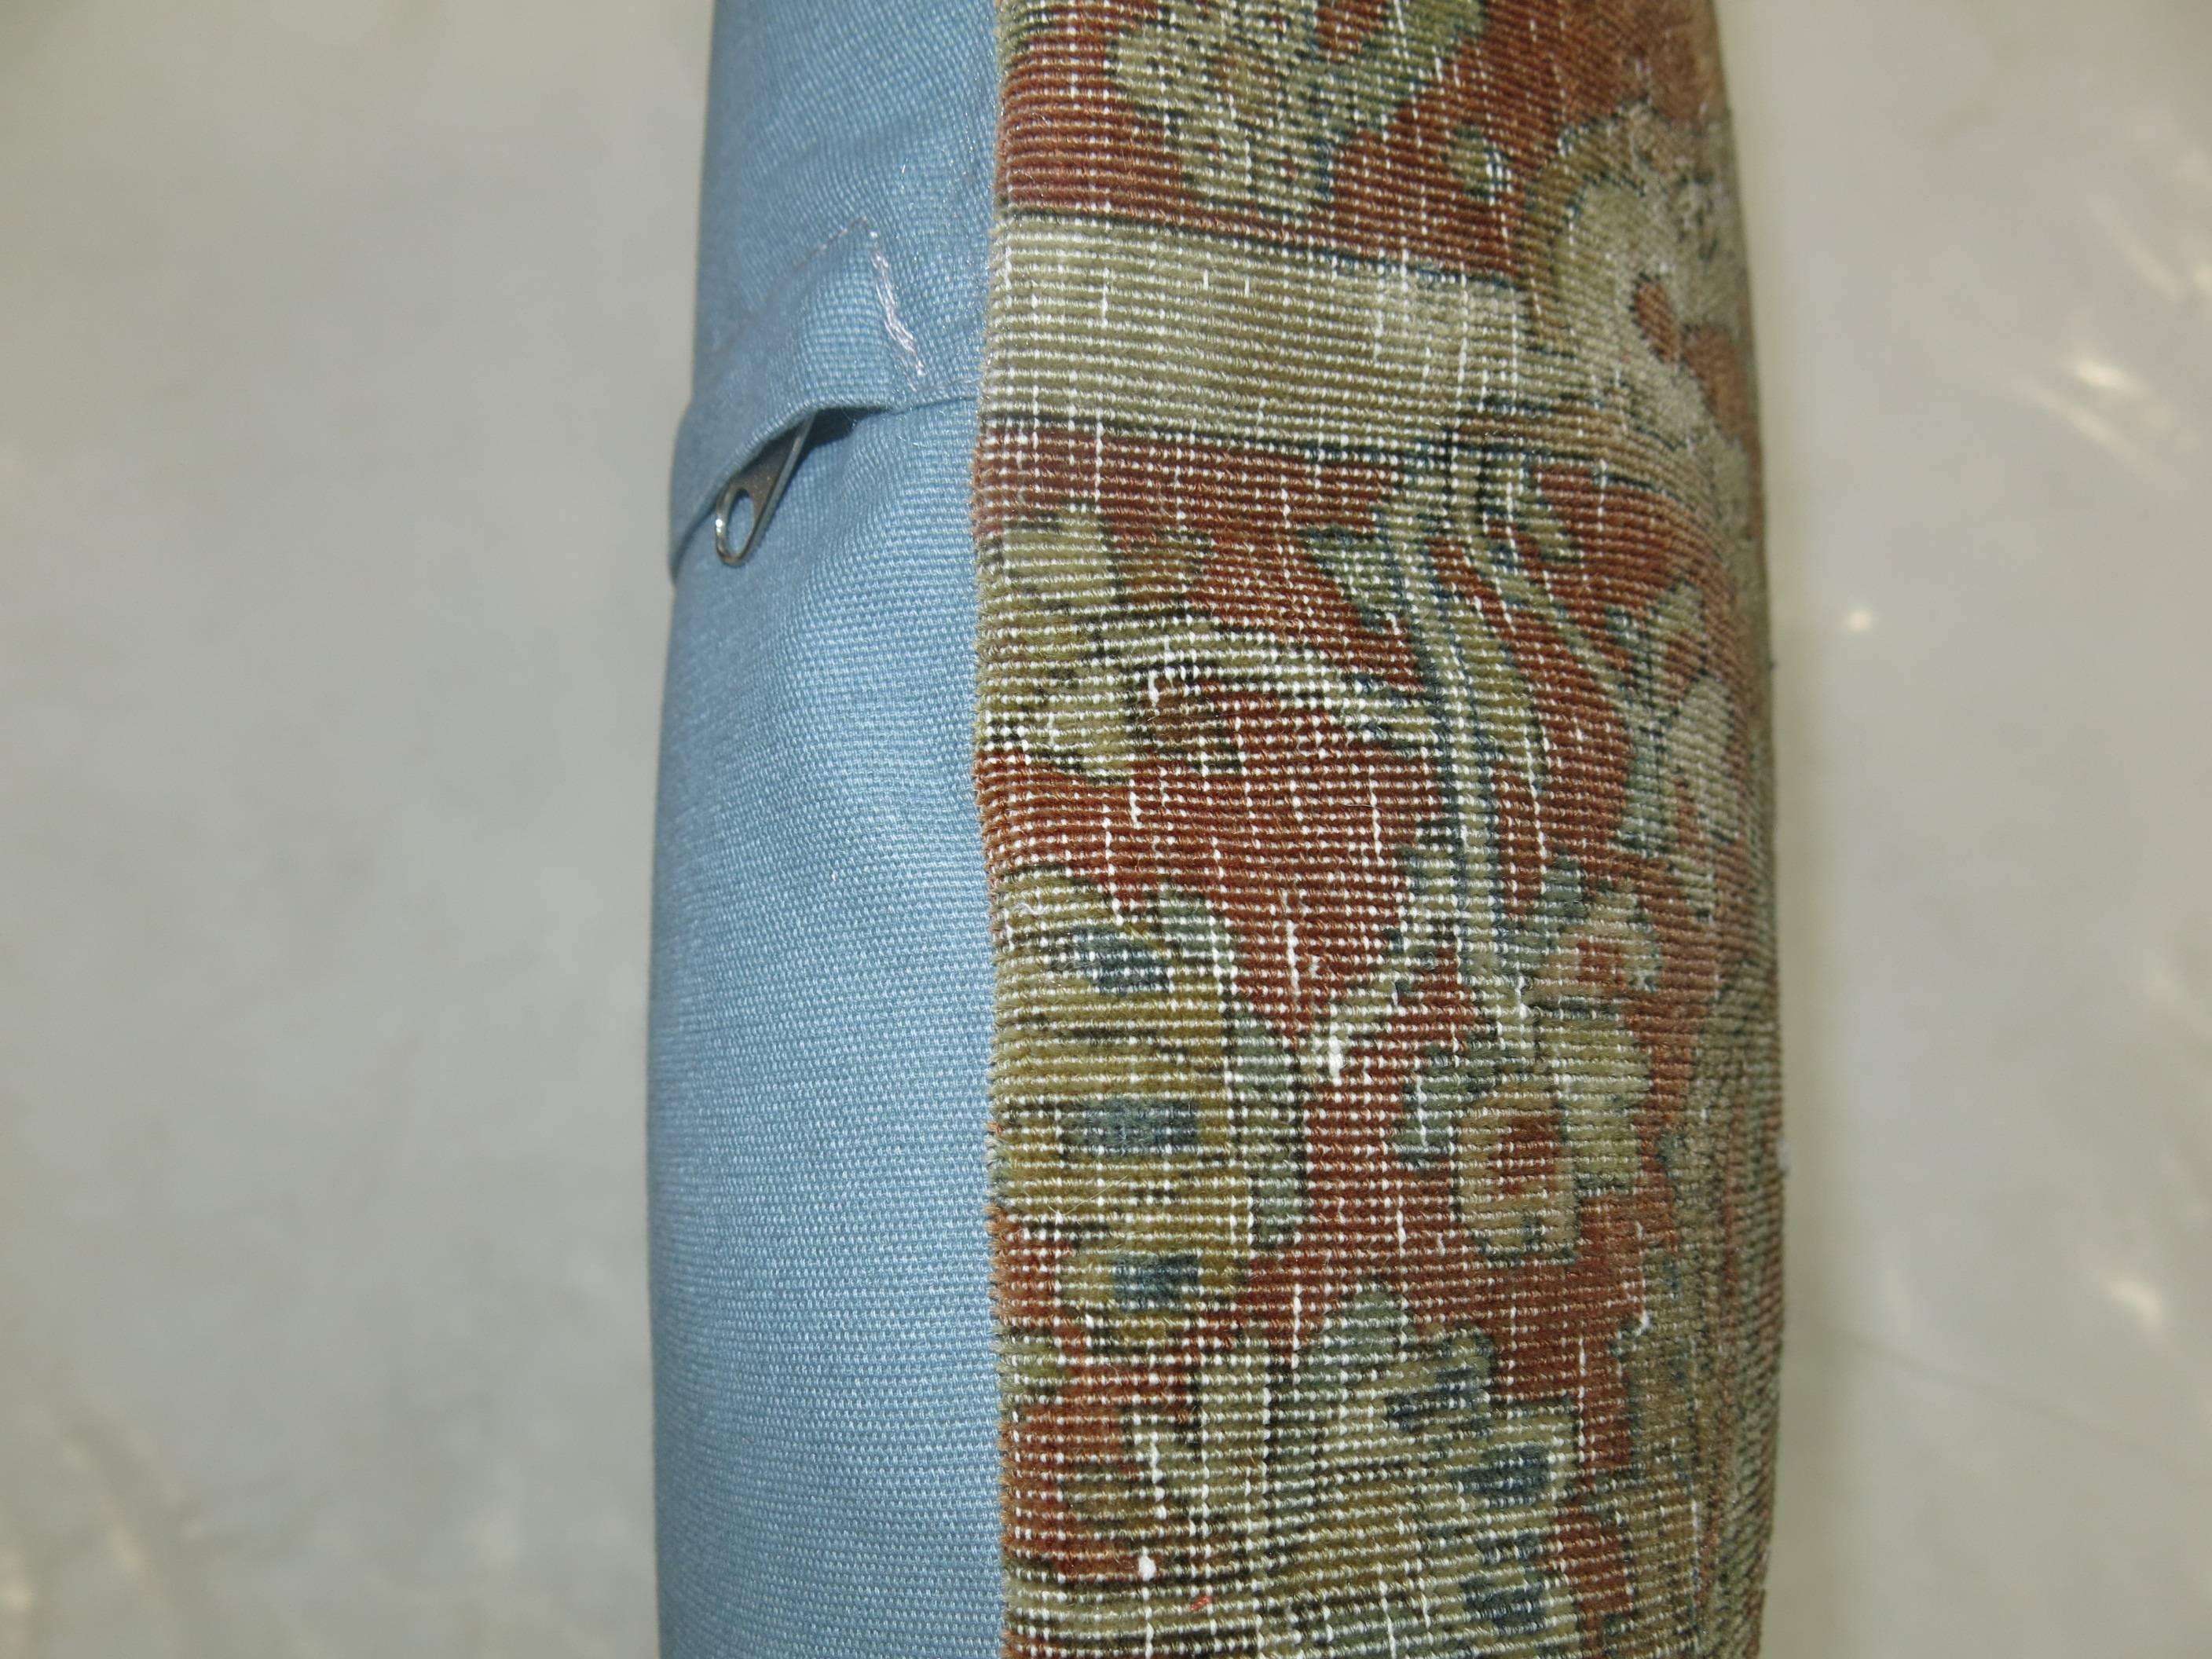 Oreiller fabriqué à partir d'un tapis persan Mohtasham Kashan shabby chic du XIXe siècle, doublé de coton bleu.

19'' x 19''